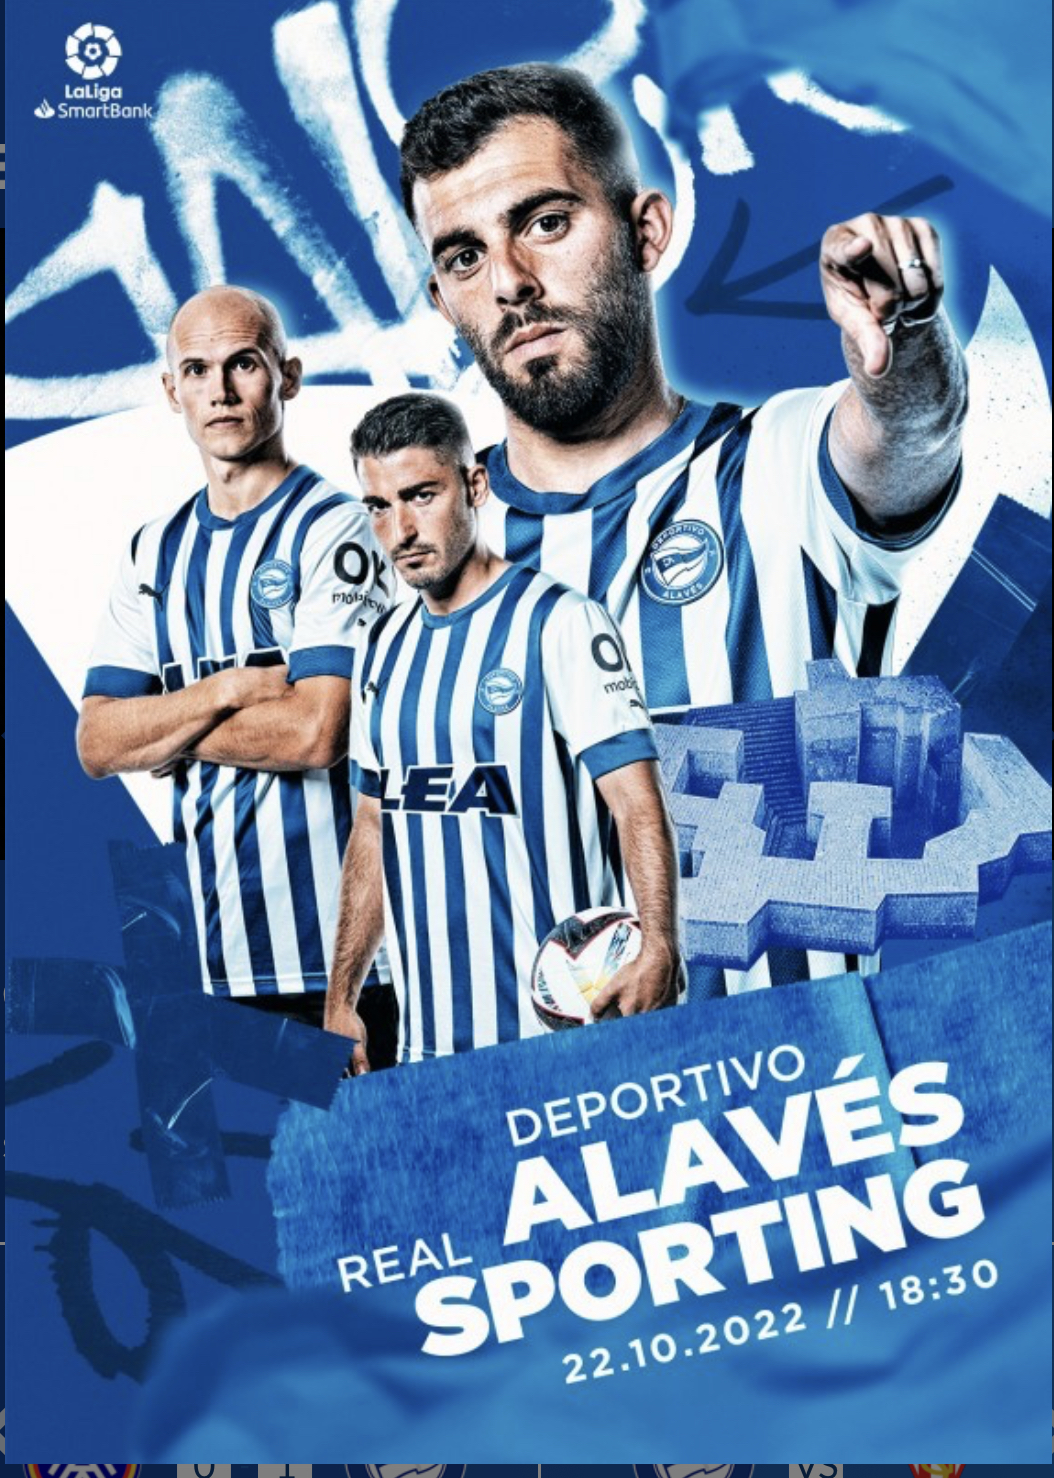 Equipo premiado con dos entradas para presenciar en directo el encuentro de Liga 123, DeportIvo Alavés-Sporting de Gijón.